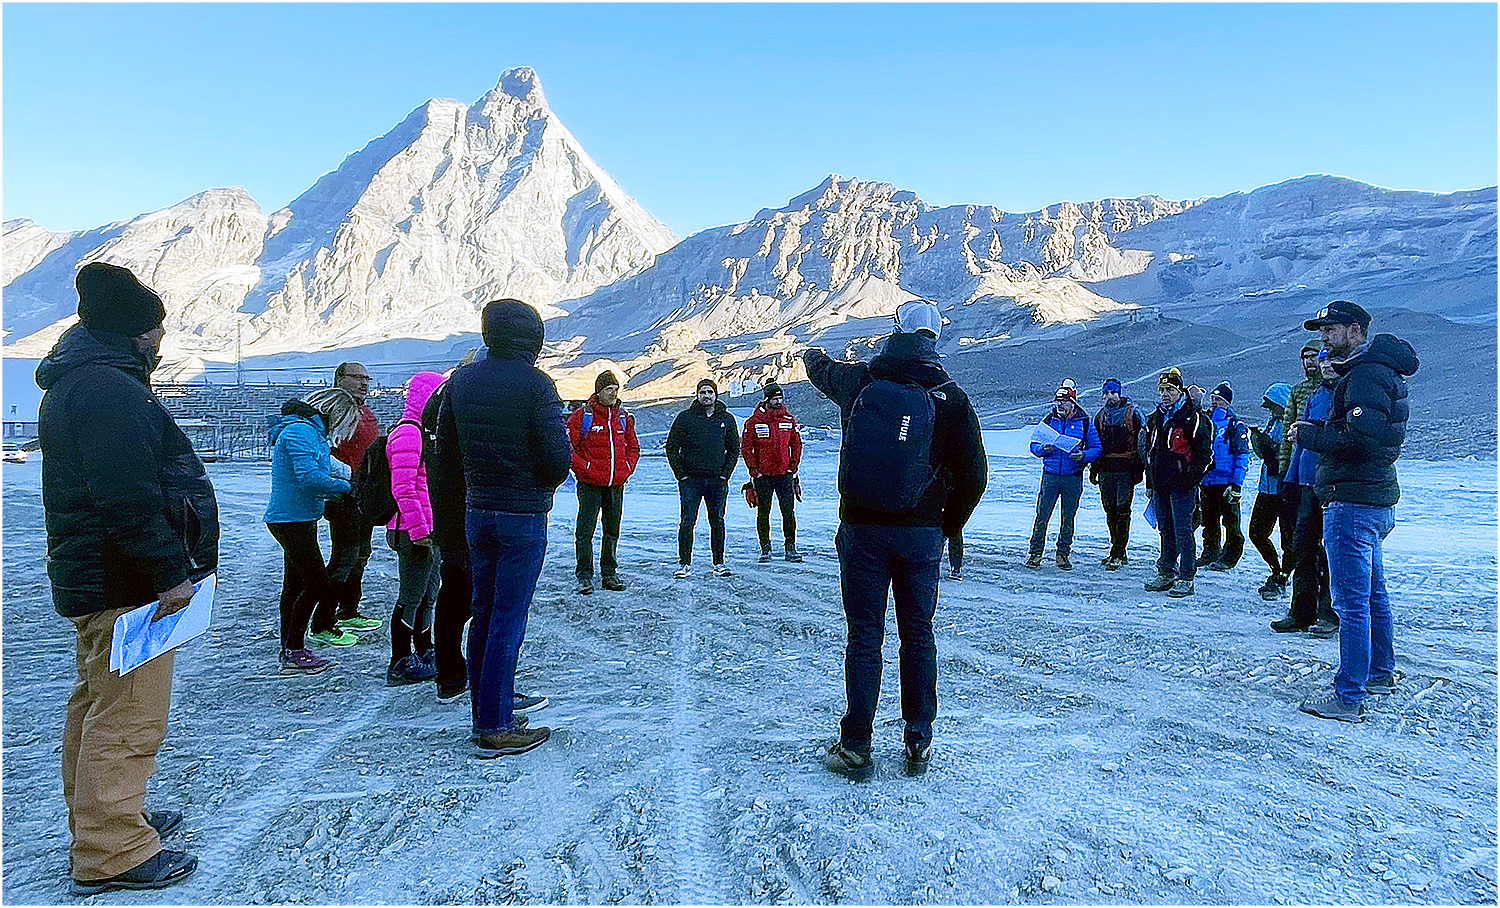 Noch zu wenig Schnee: Ist das neue Heimrennen von Beat Feuz und Dominik Paris doch in Gefahr? (Foto: © Matterhorn Cervino Speed Opening)